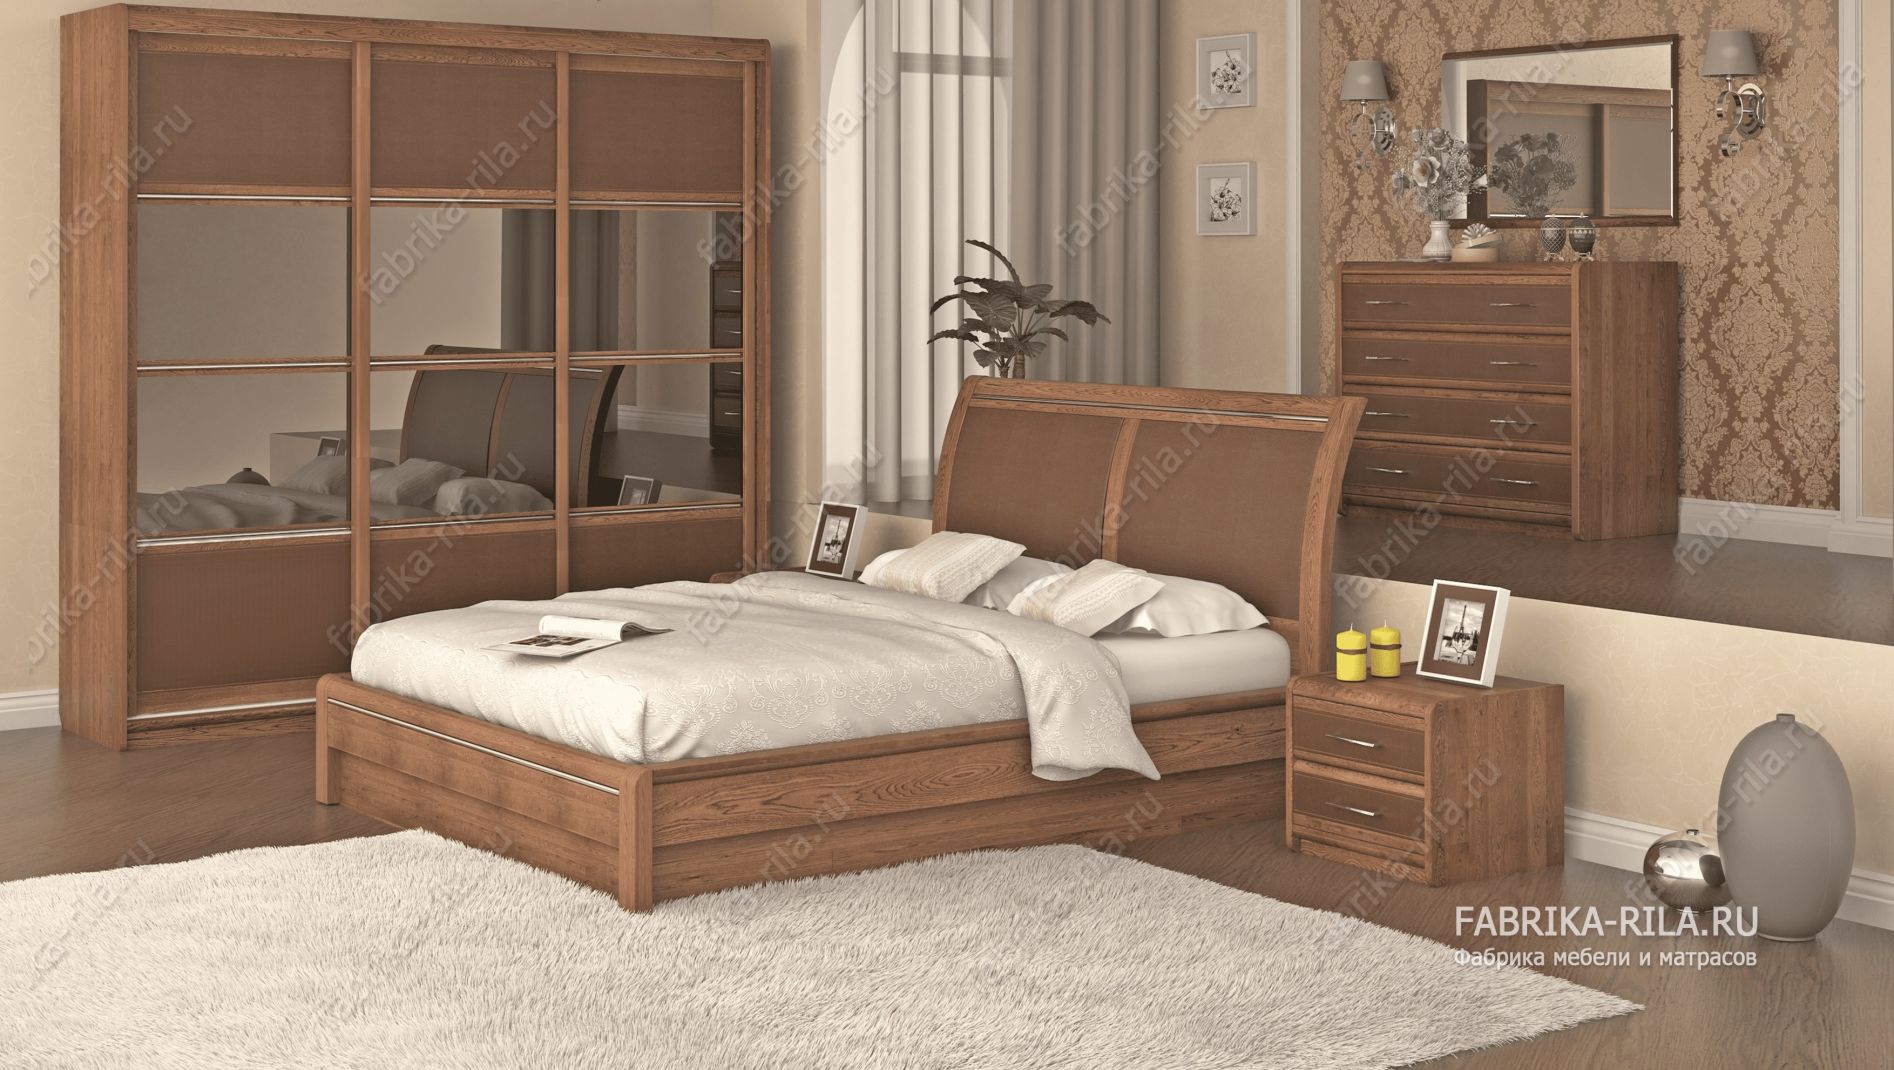 кровать Okaeri 6 см— 90x190 см. из ясеня